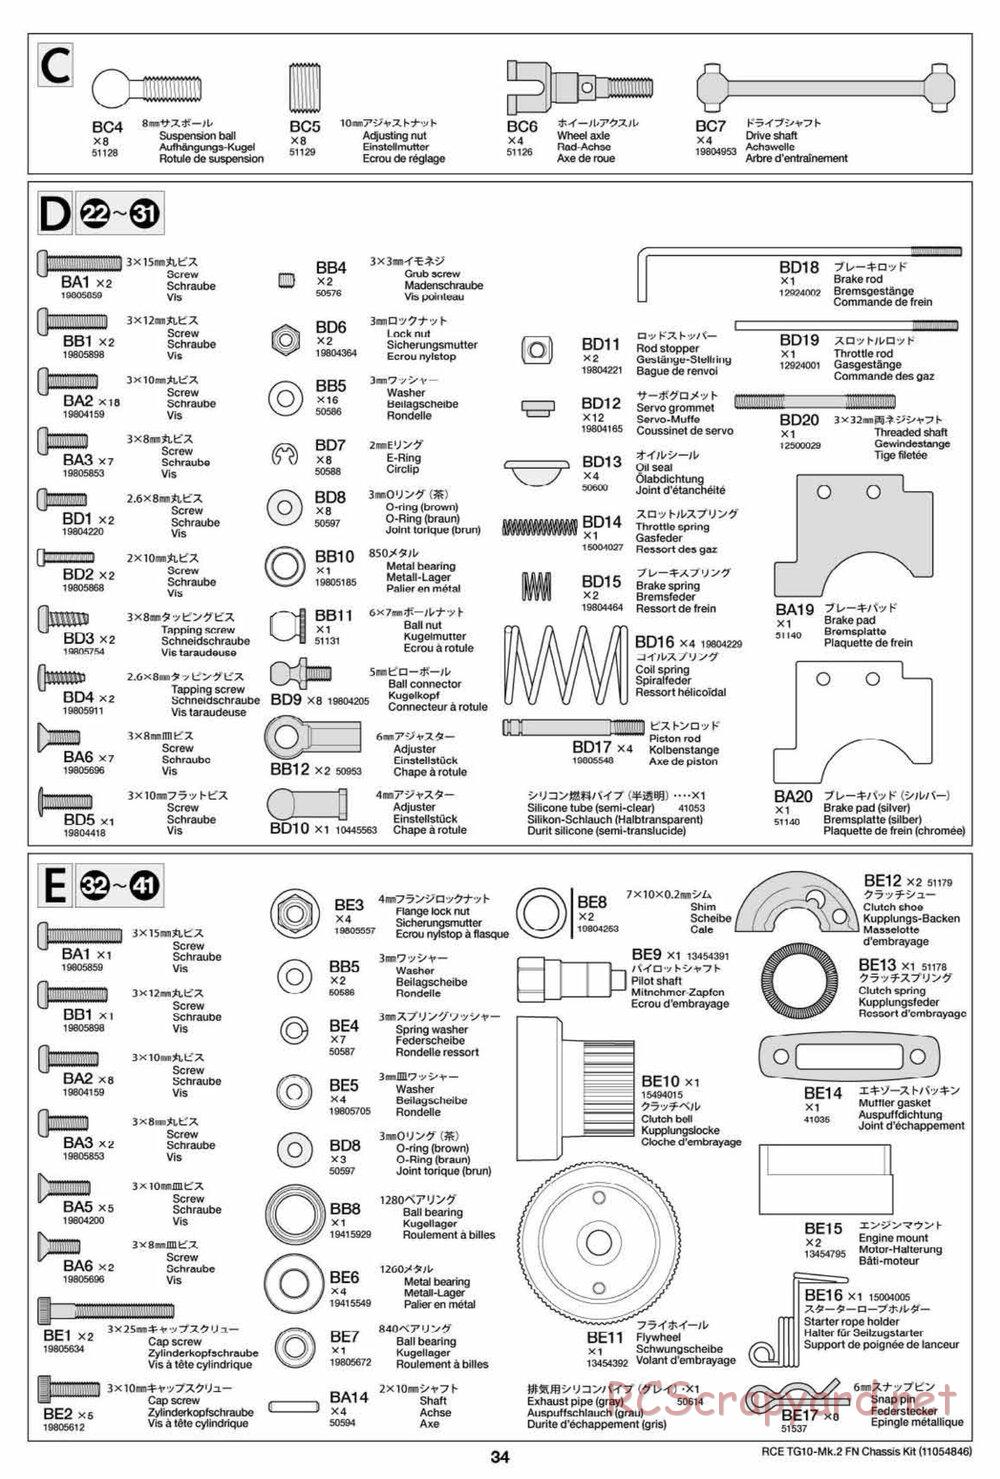 Tamiya - TG10 Mk.2 FN Chassis - Manual - Page 34